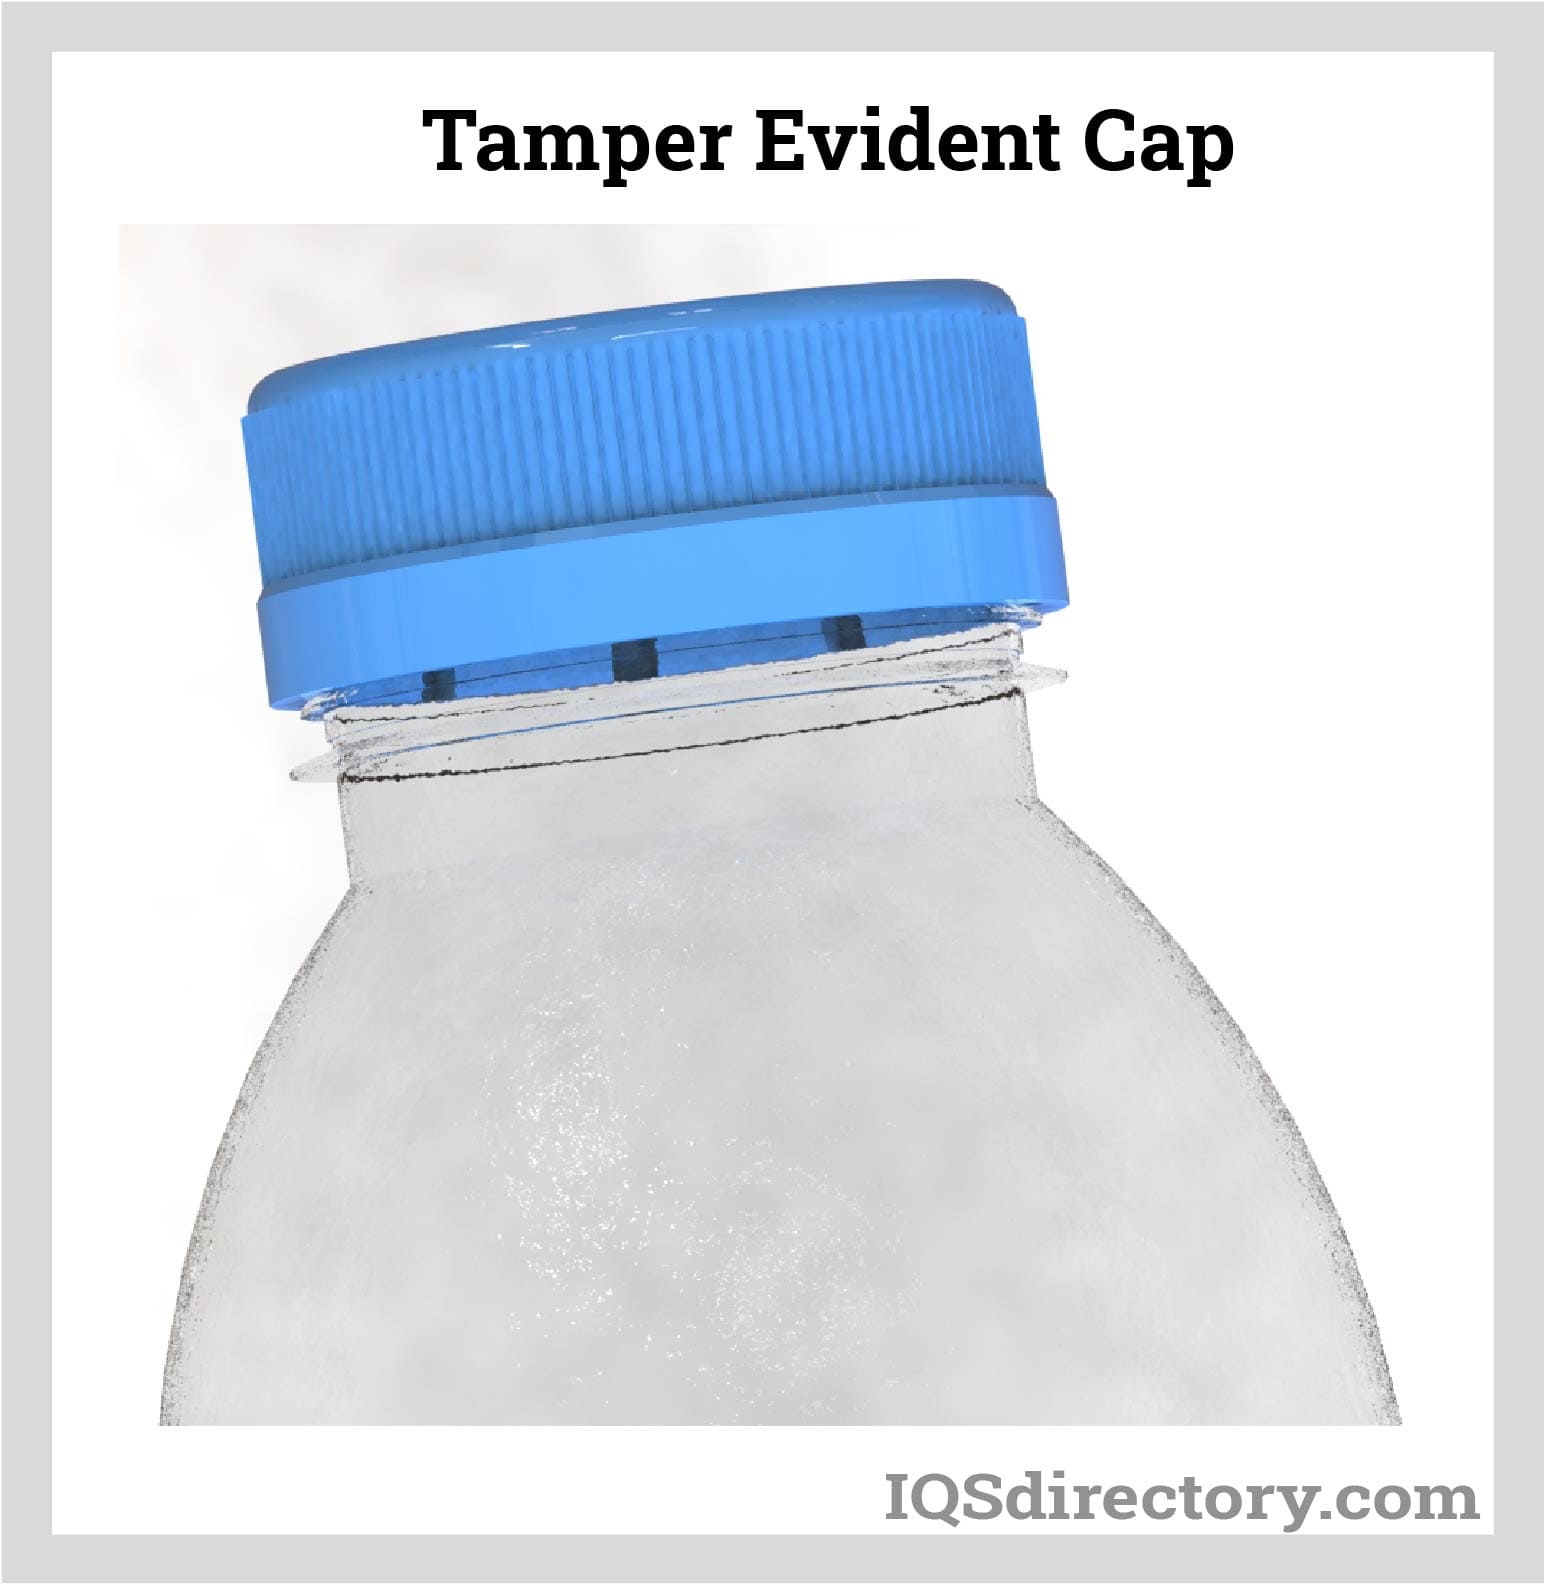 Tamper Evident Cap